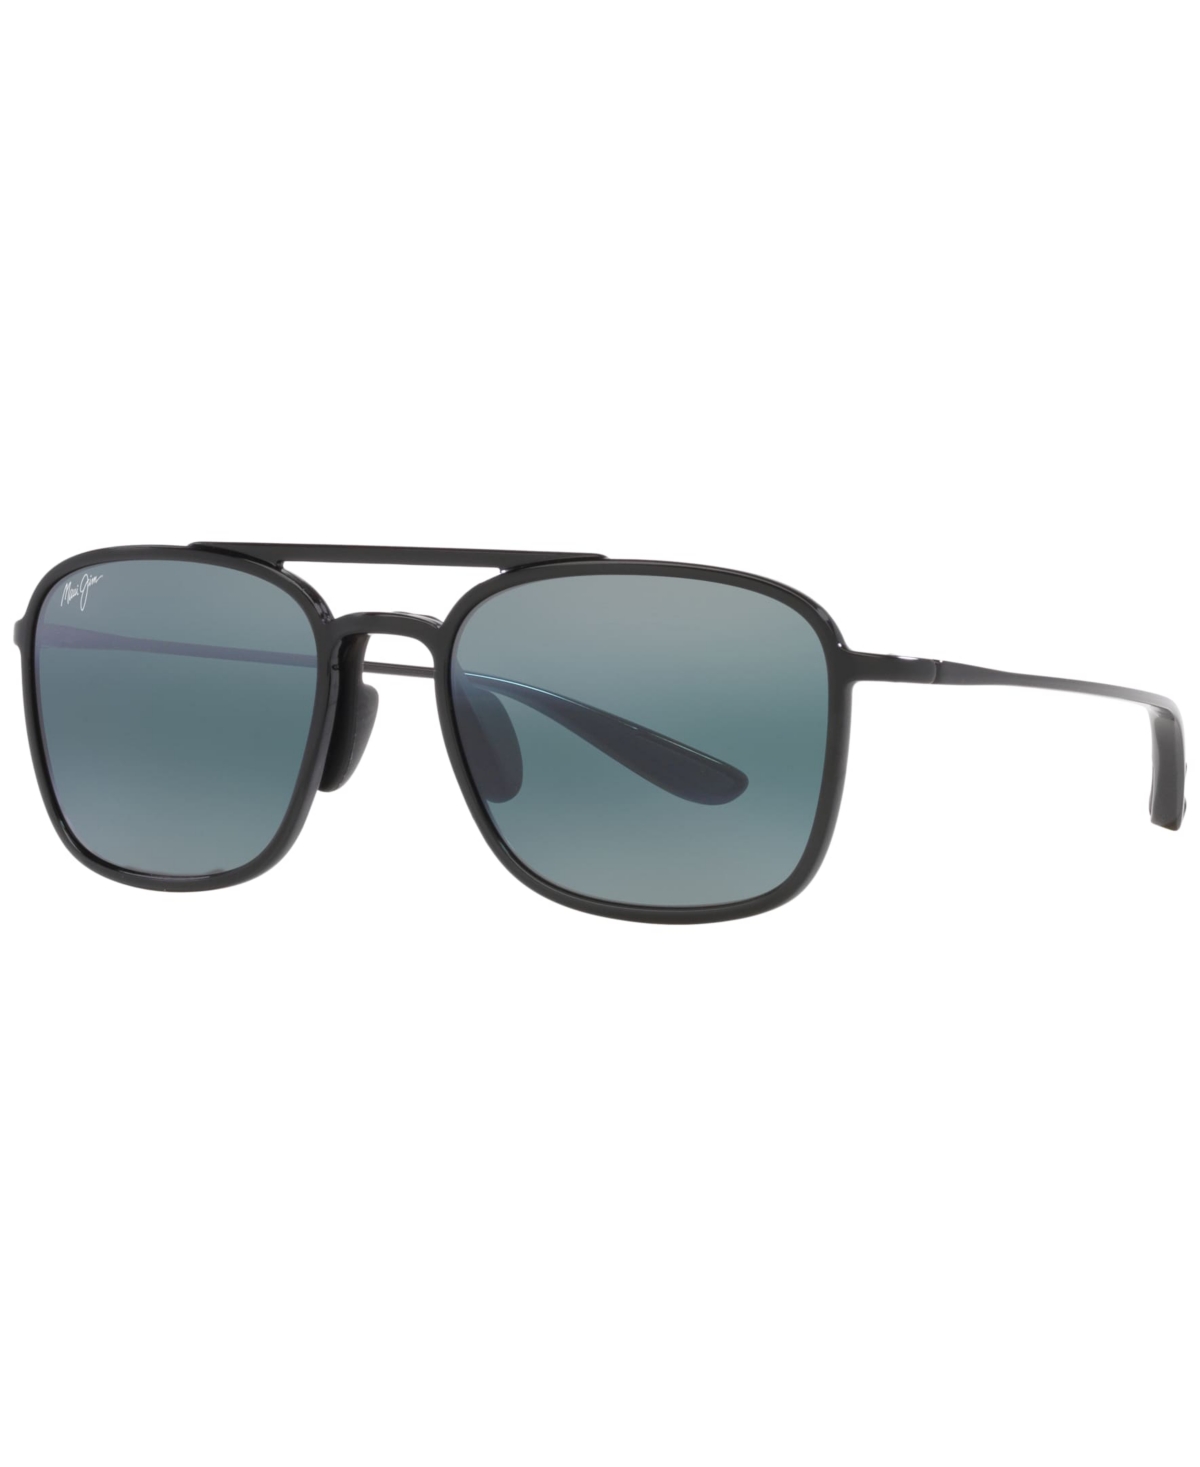 Unisex Keokea 55 Sunglasses, MJ00068355-x - Black Shiny